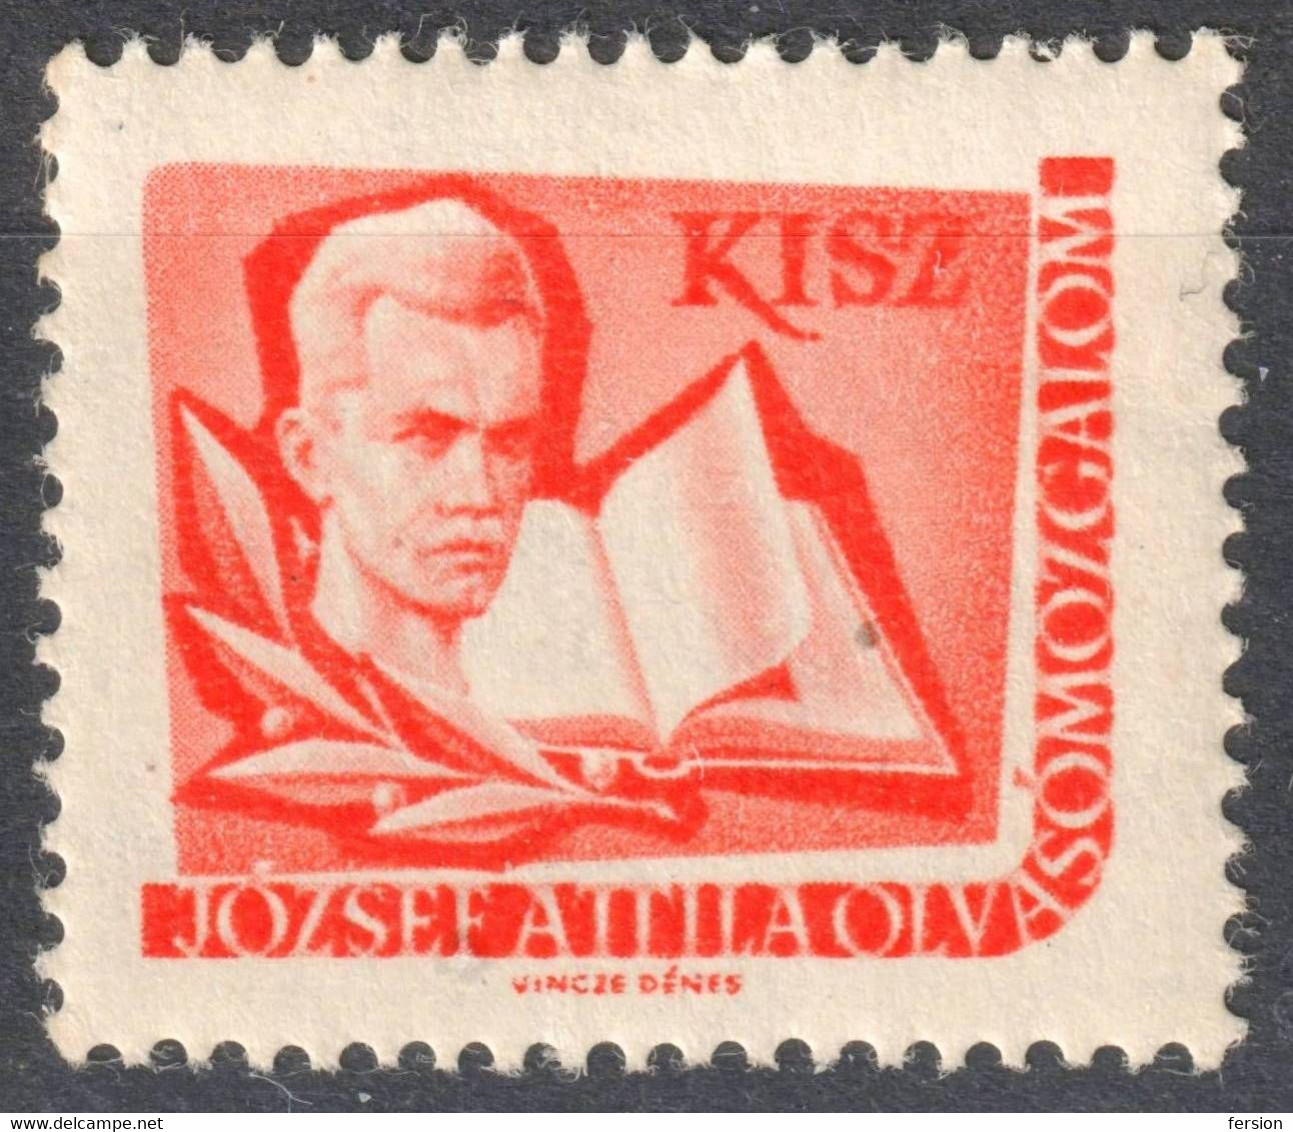 József Attila Poet Book KISZ Hungarian Young Communist League LIBRARY Member LABEL CINDERELLA VIGNETTE Hungary - Service